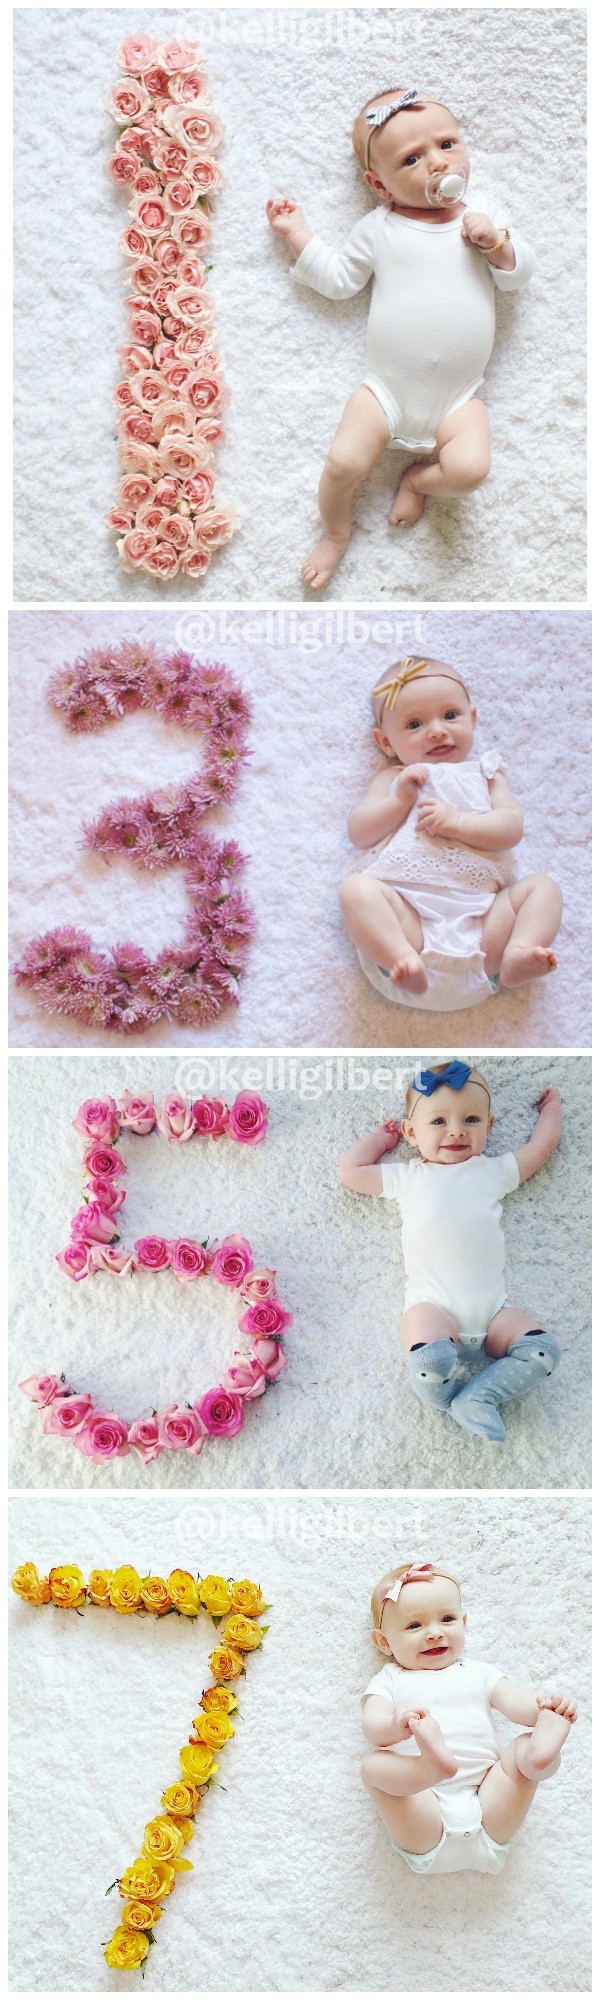 Idee per foto mensili del bambino con petali di fiori.